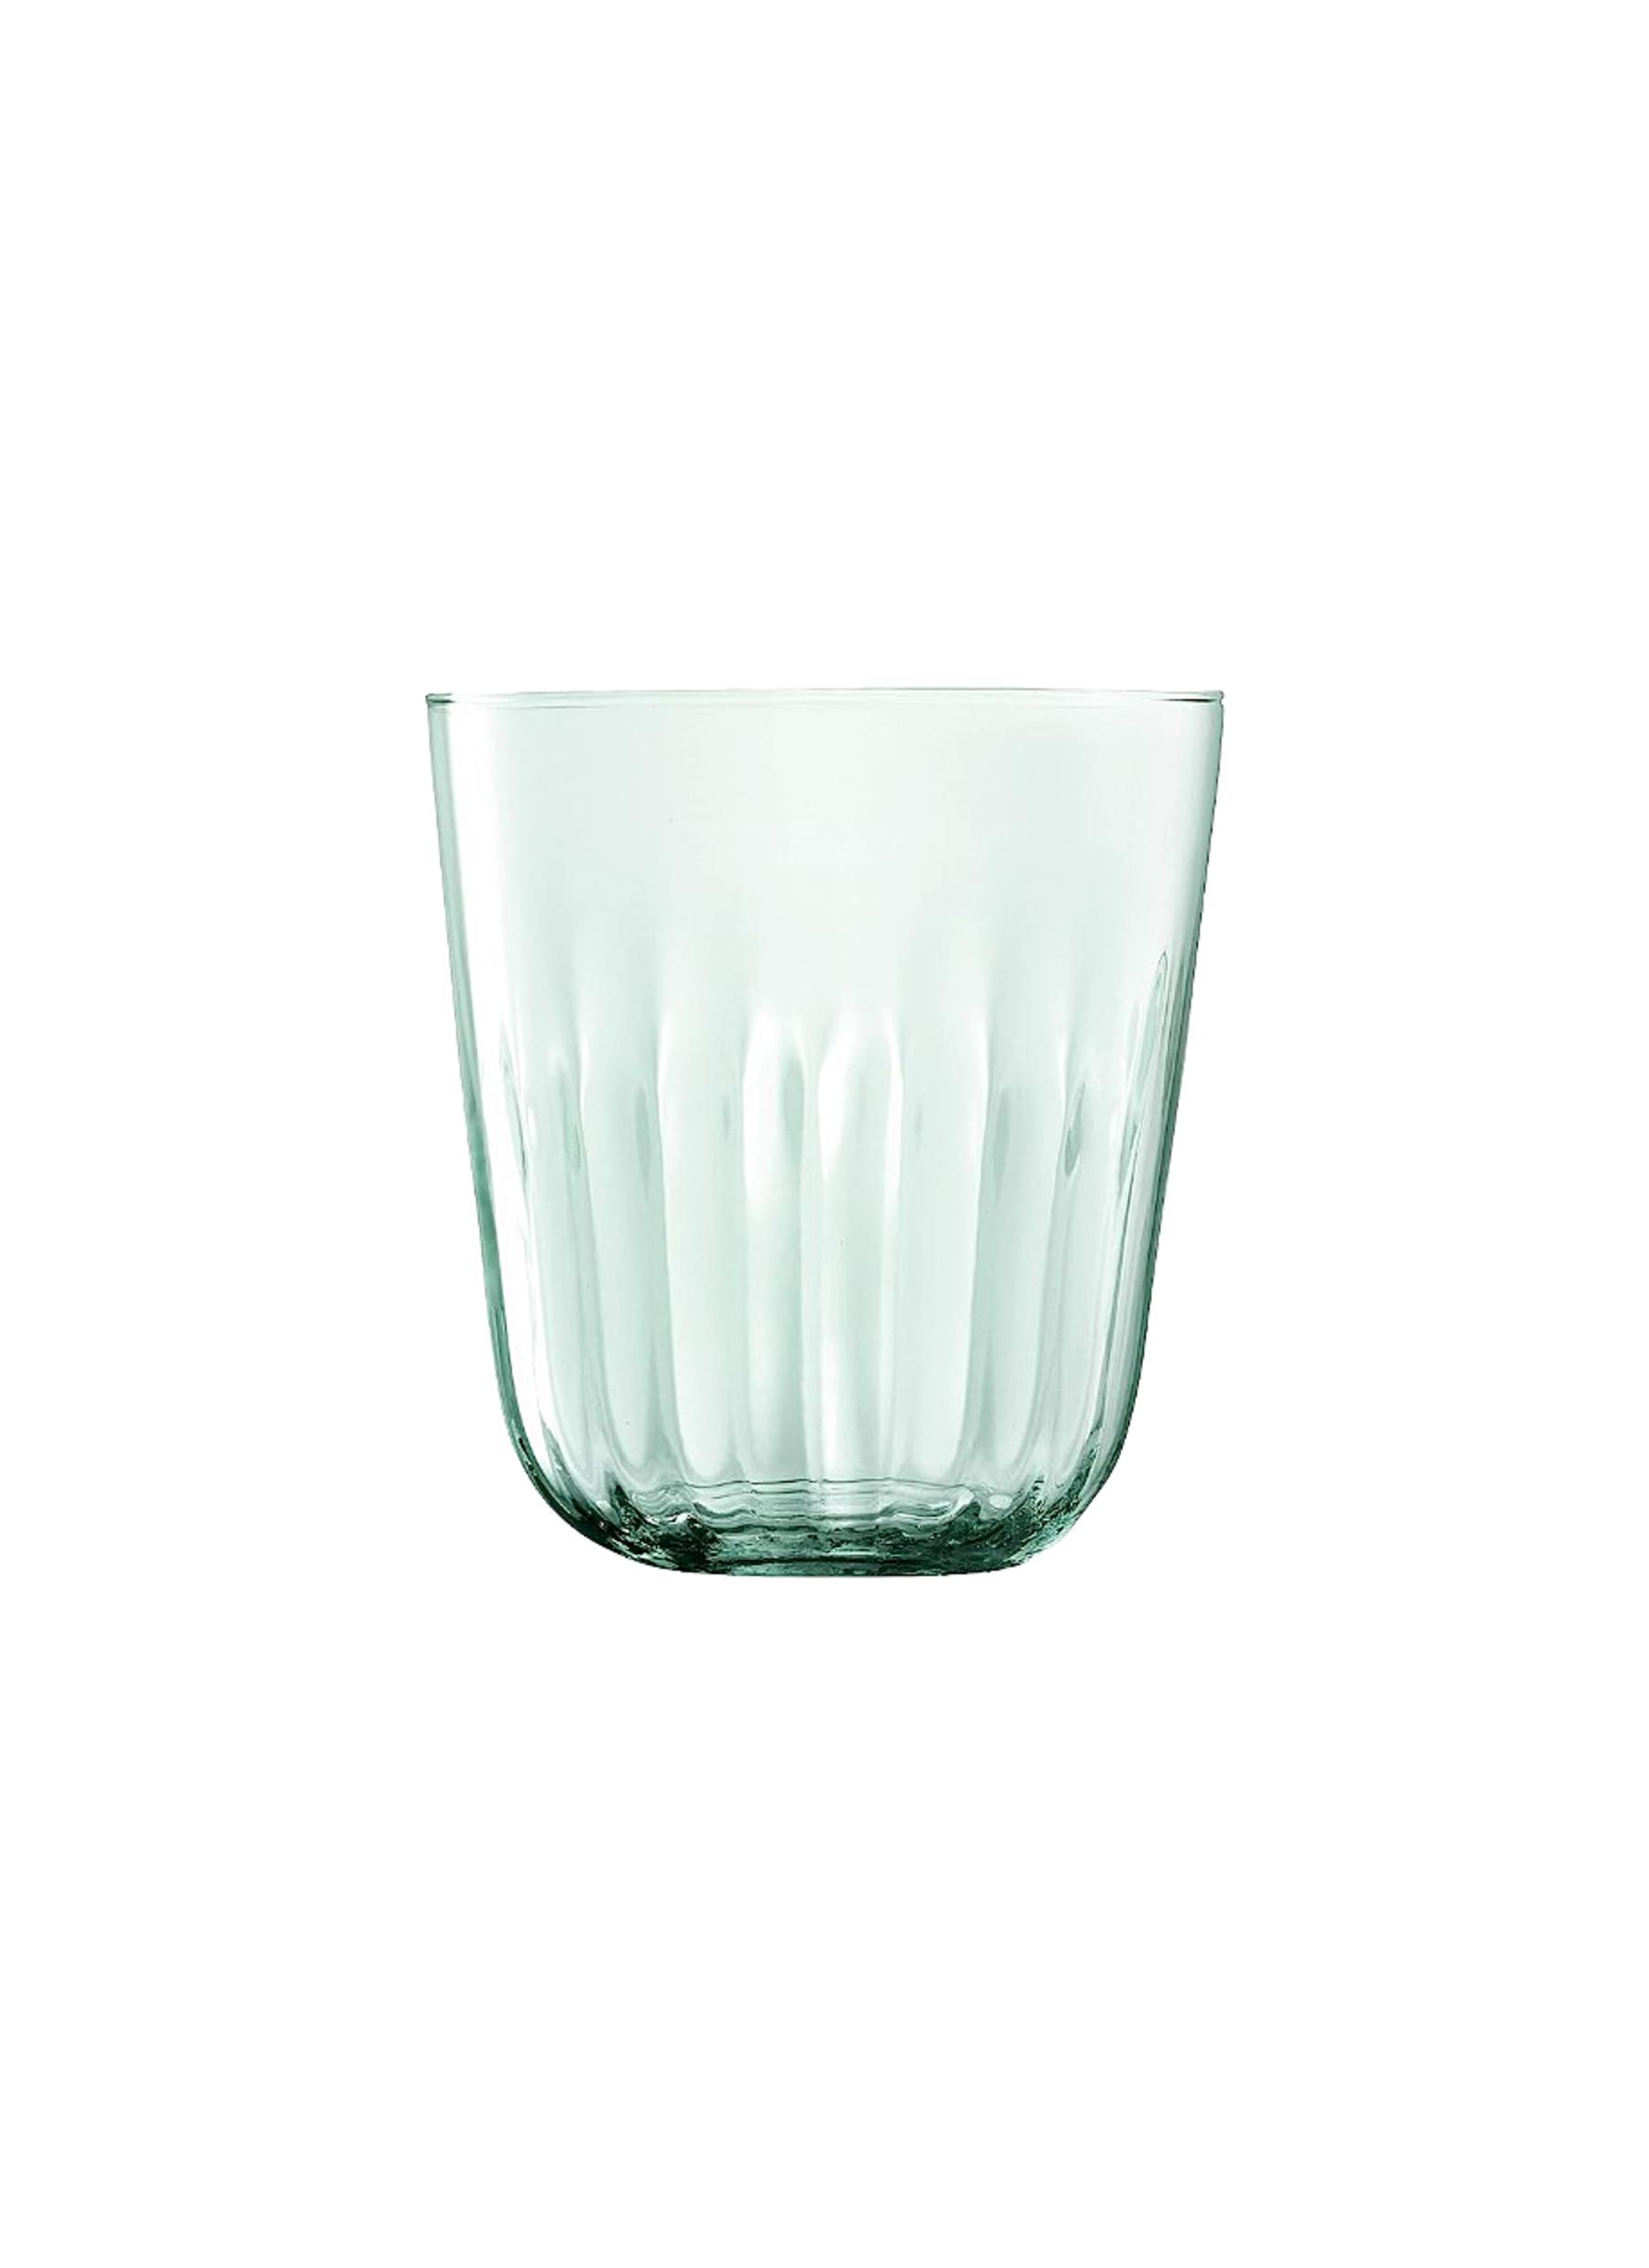 Mia Recycled Glass Vase/Lantern